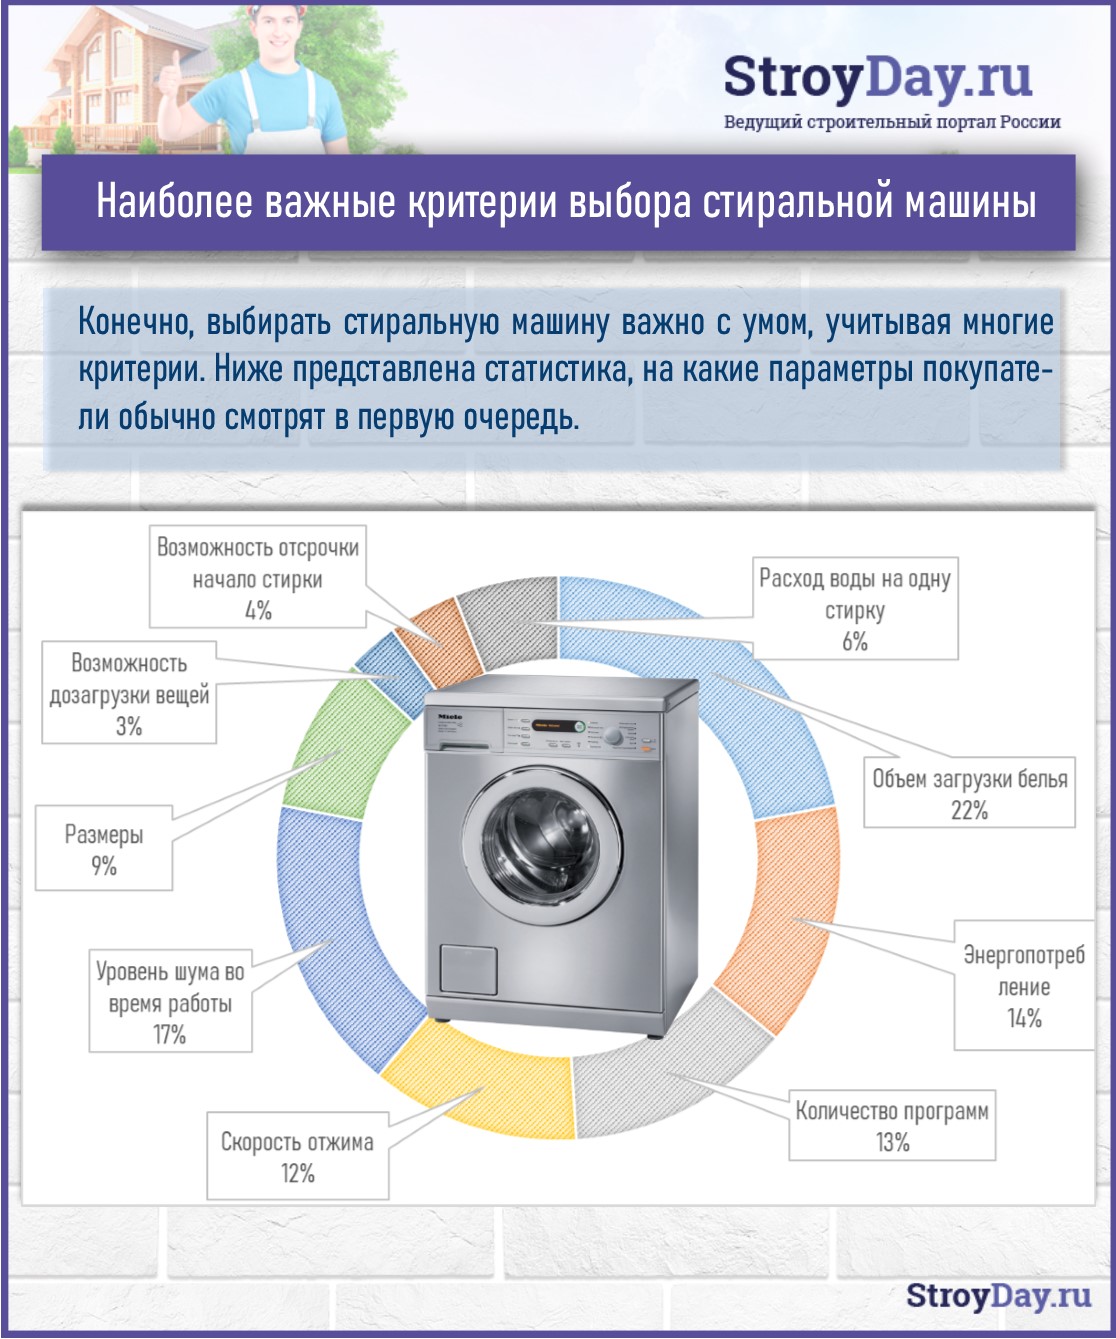 Статистика - Критерии выбора стиральной машины